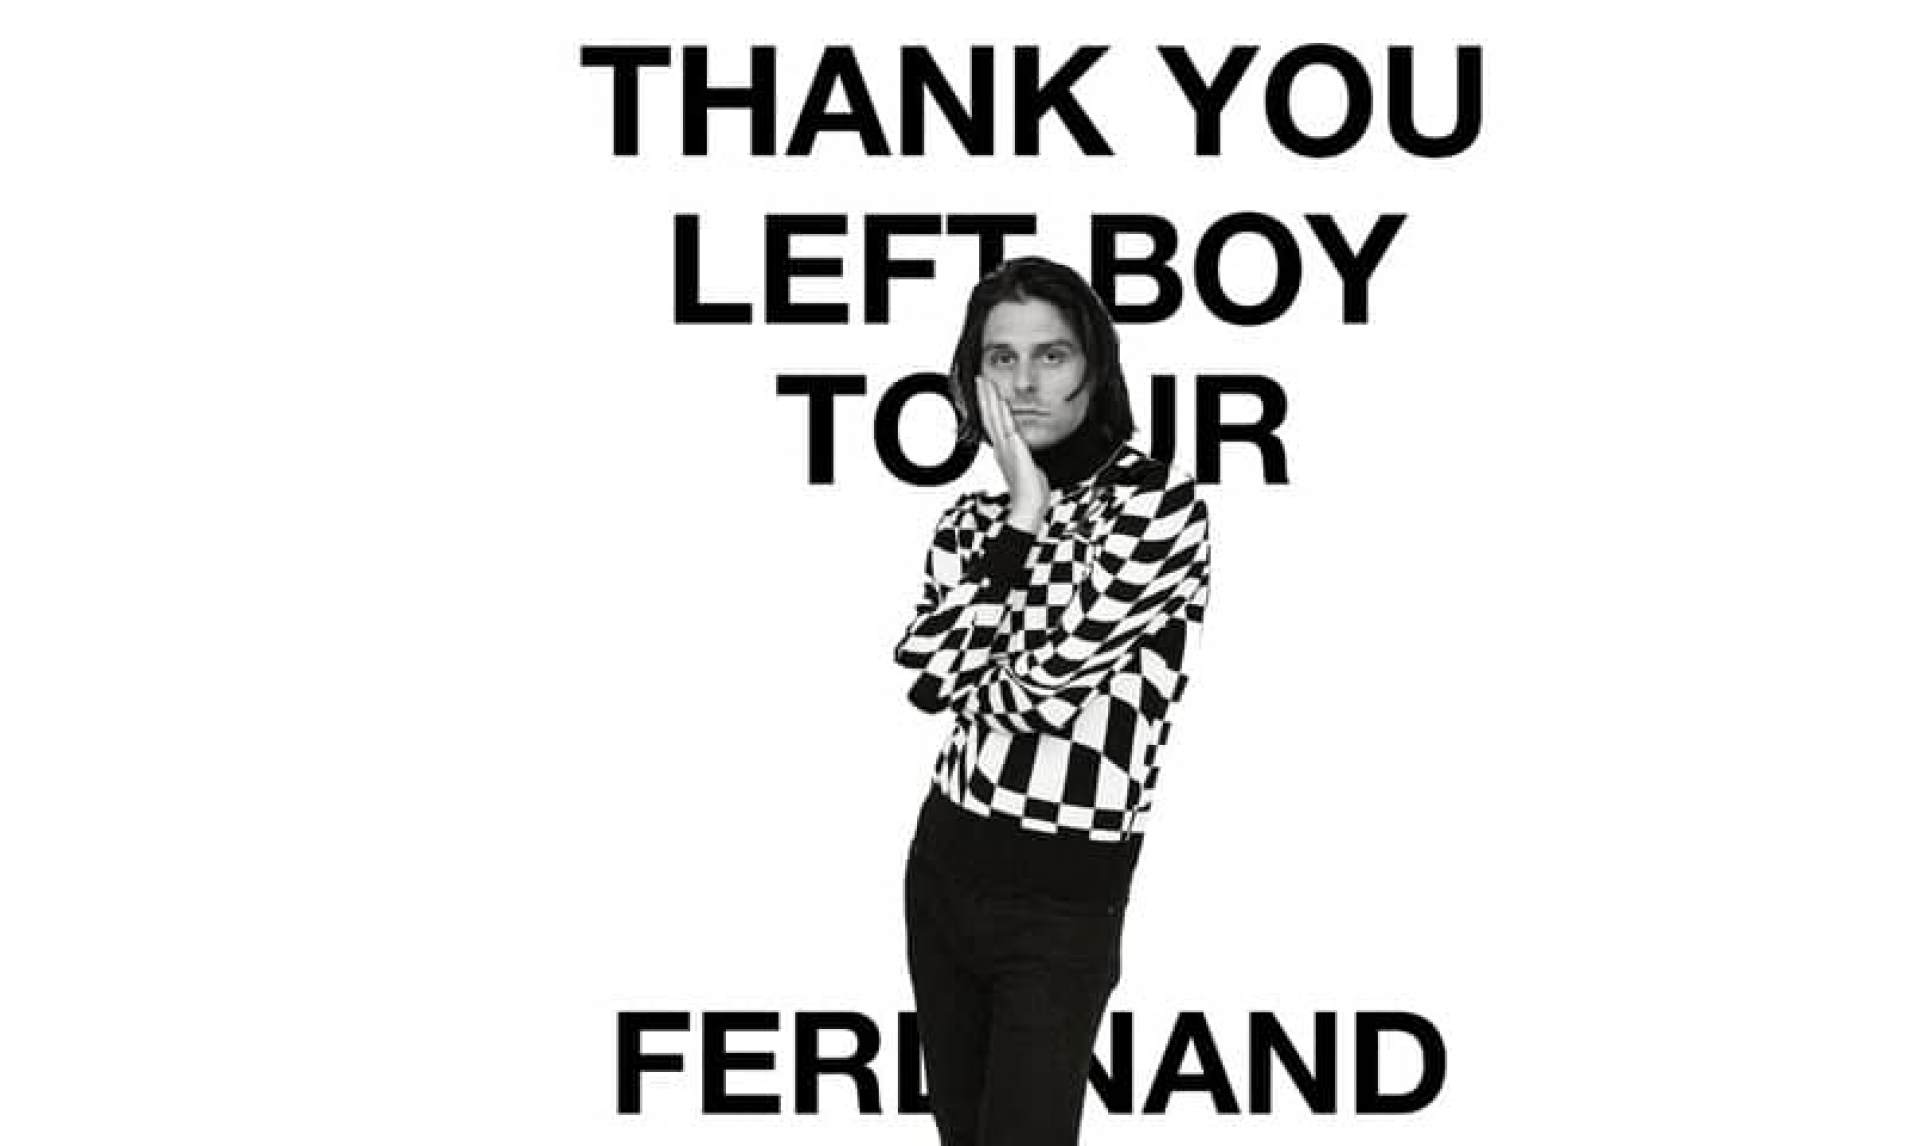 Ferdinand fka Leftboy